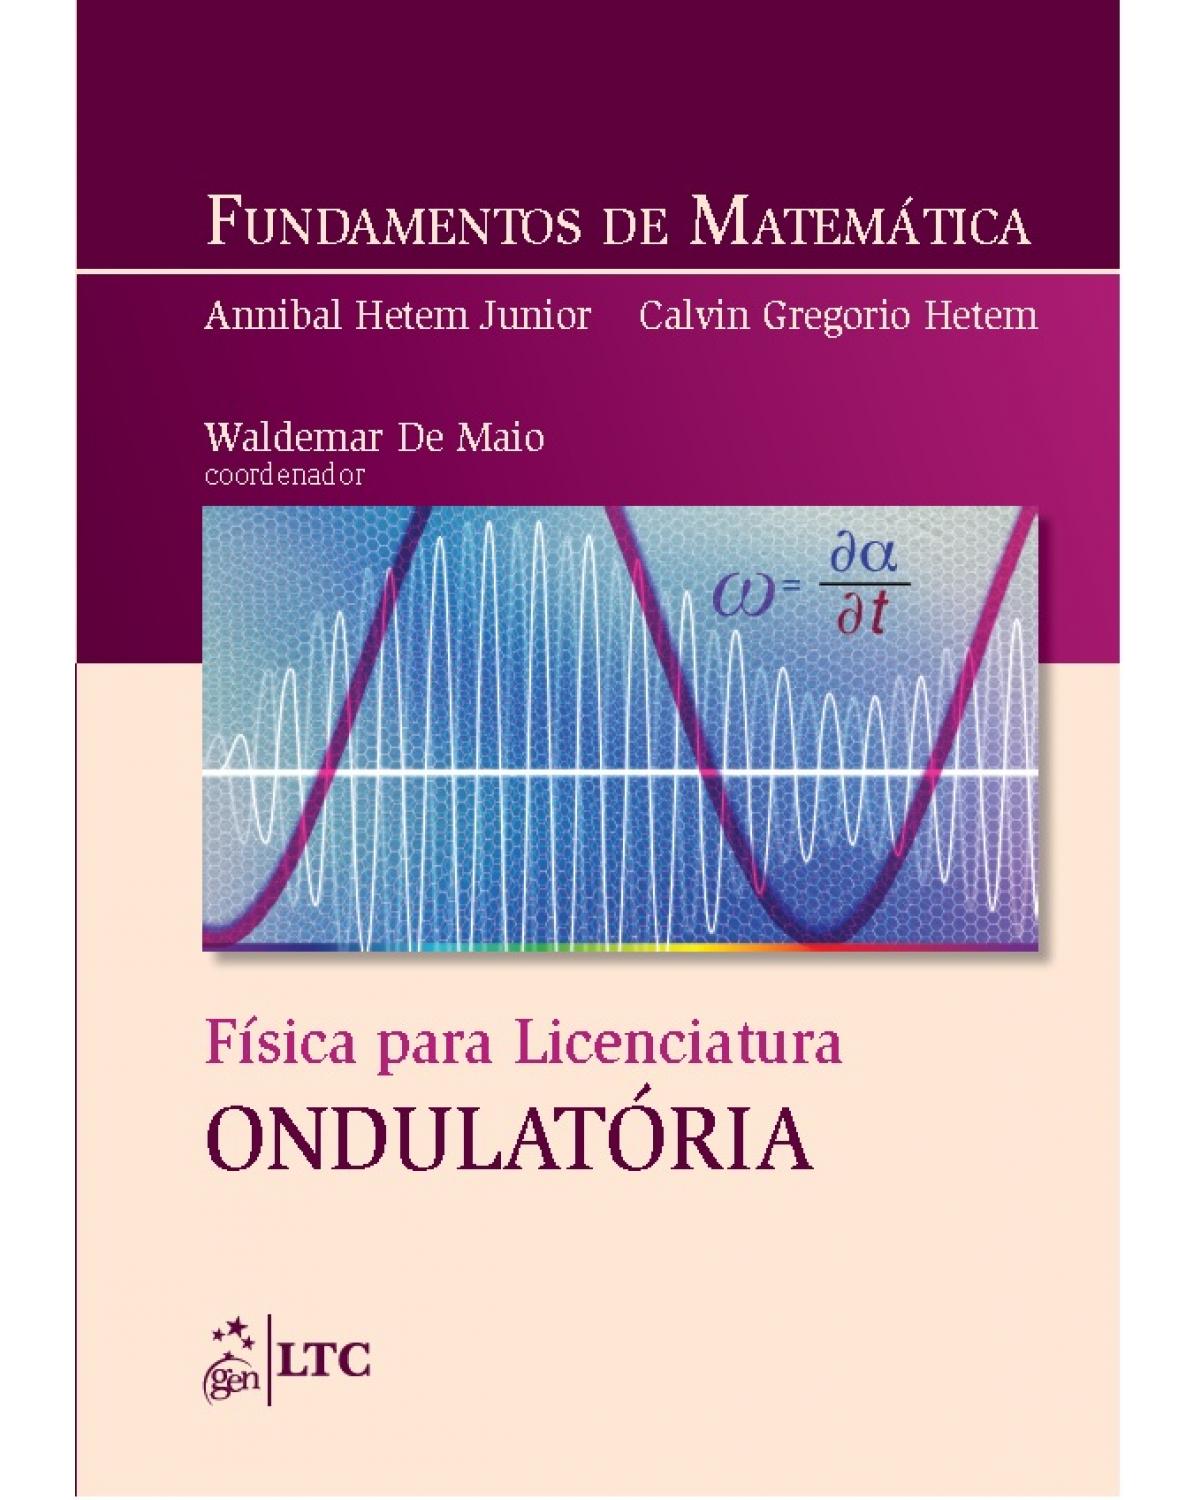 Fundamentos de matemática - Física para licenciatura: ondulatória - 1ª Edição | 2016